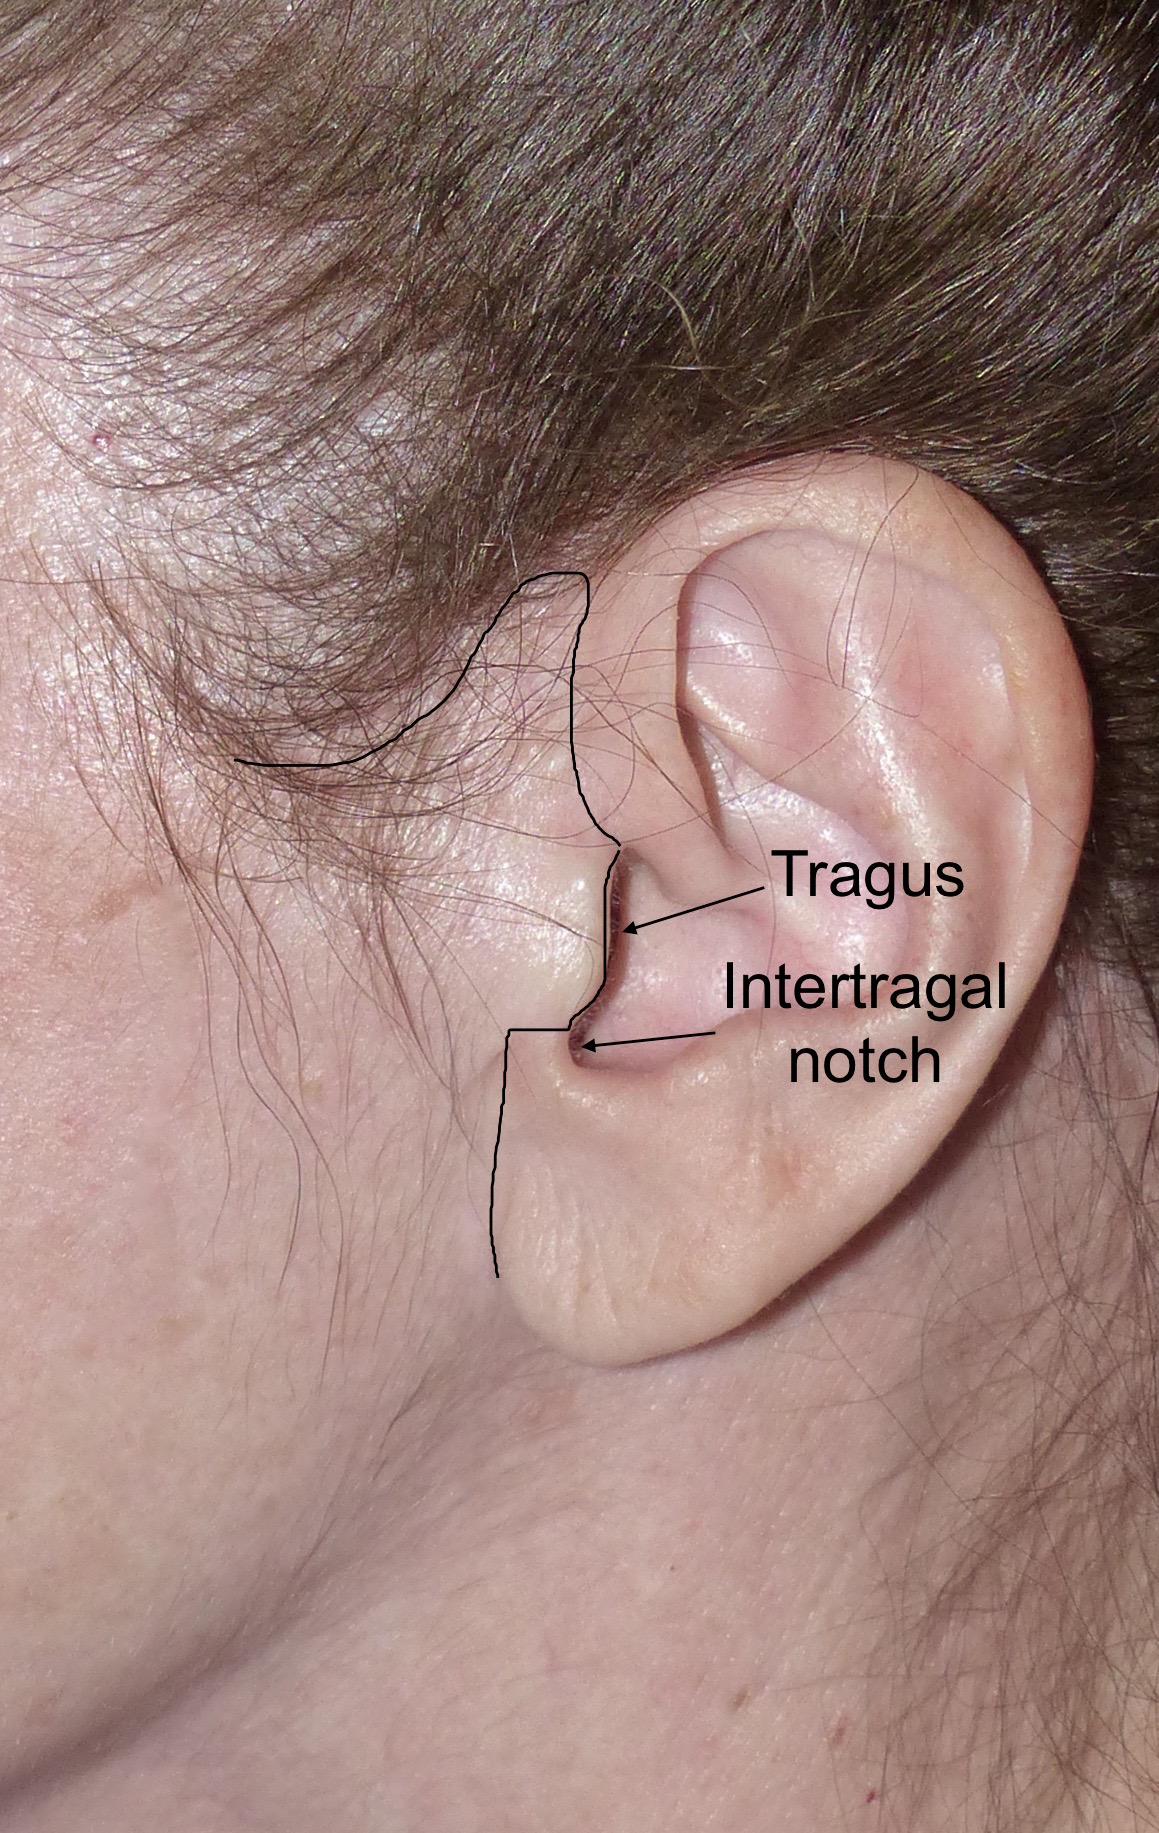 Female ear zone - Tragus, Intertragal notch